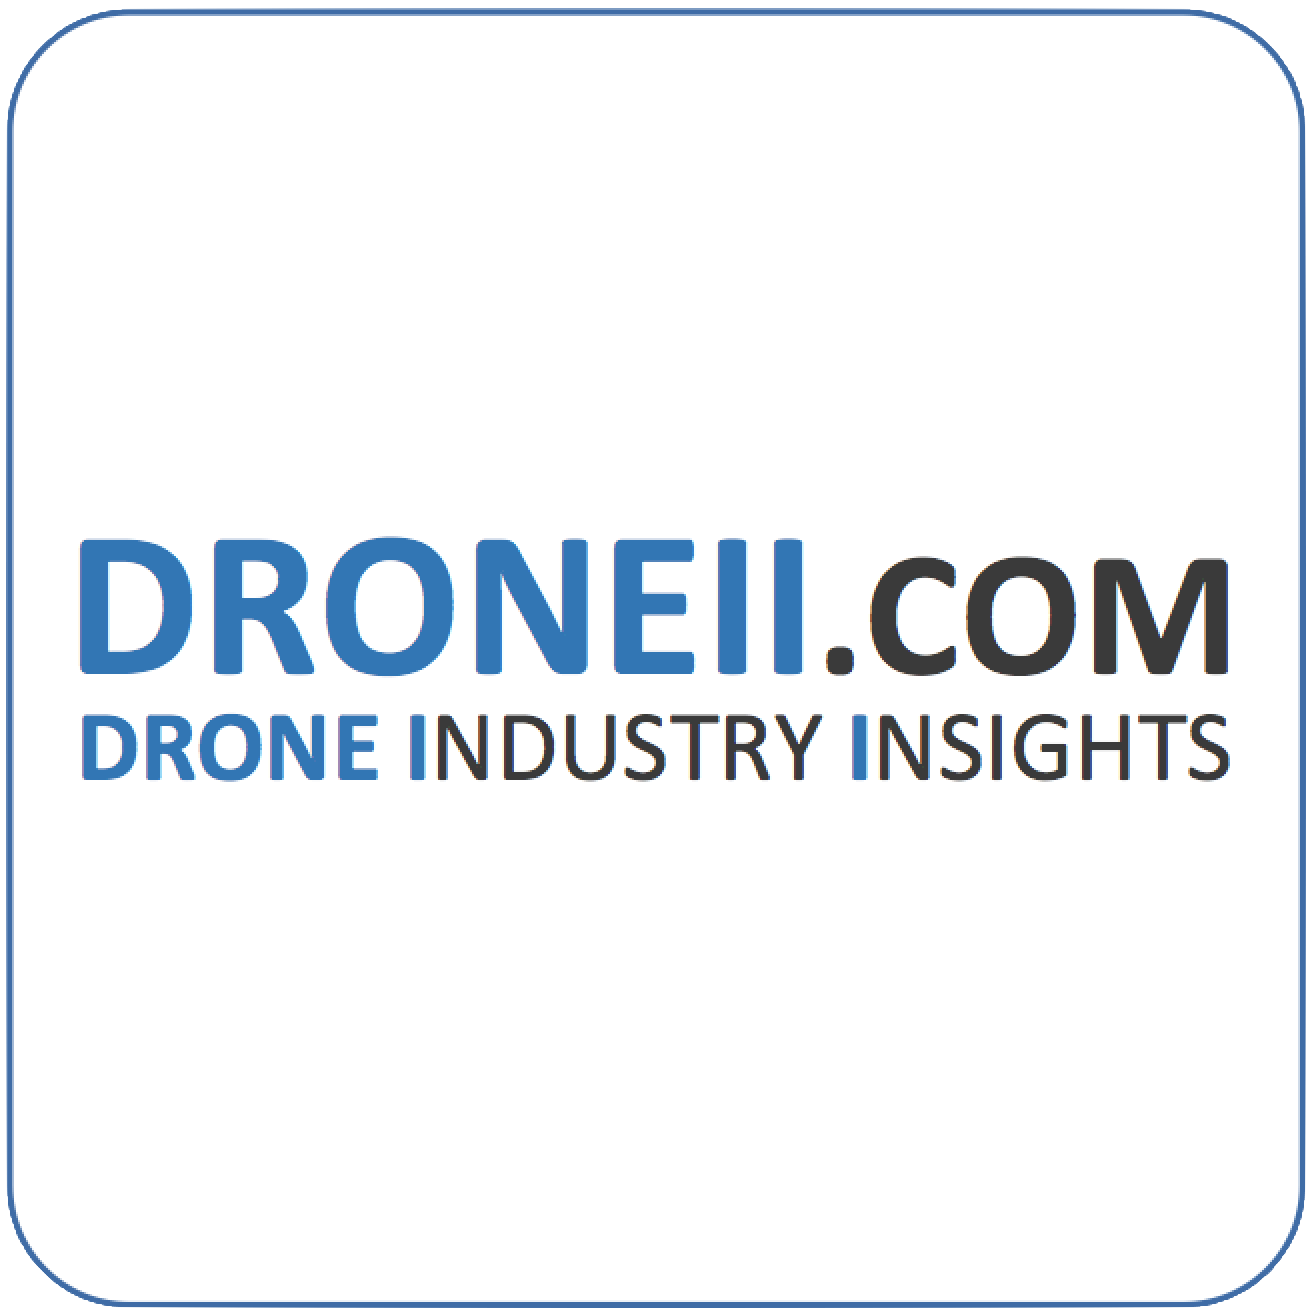 Team DRONEII.com